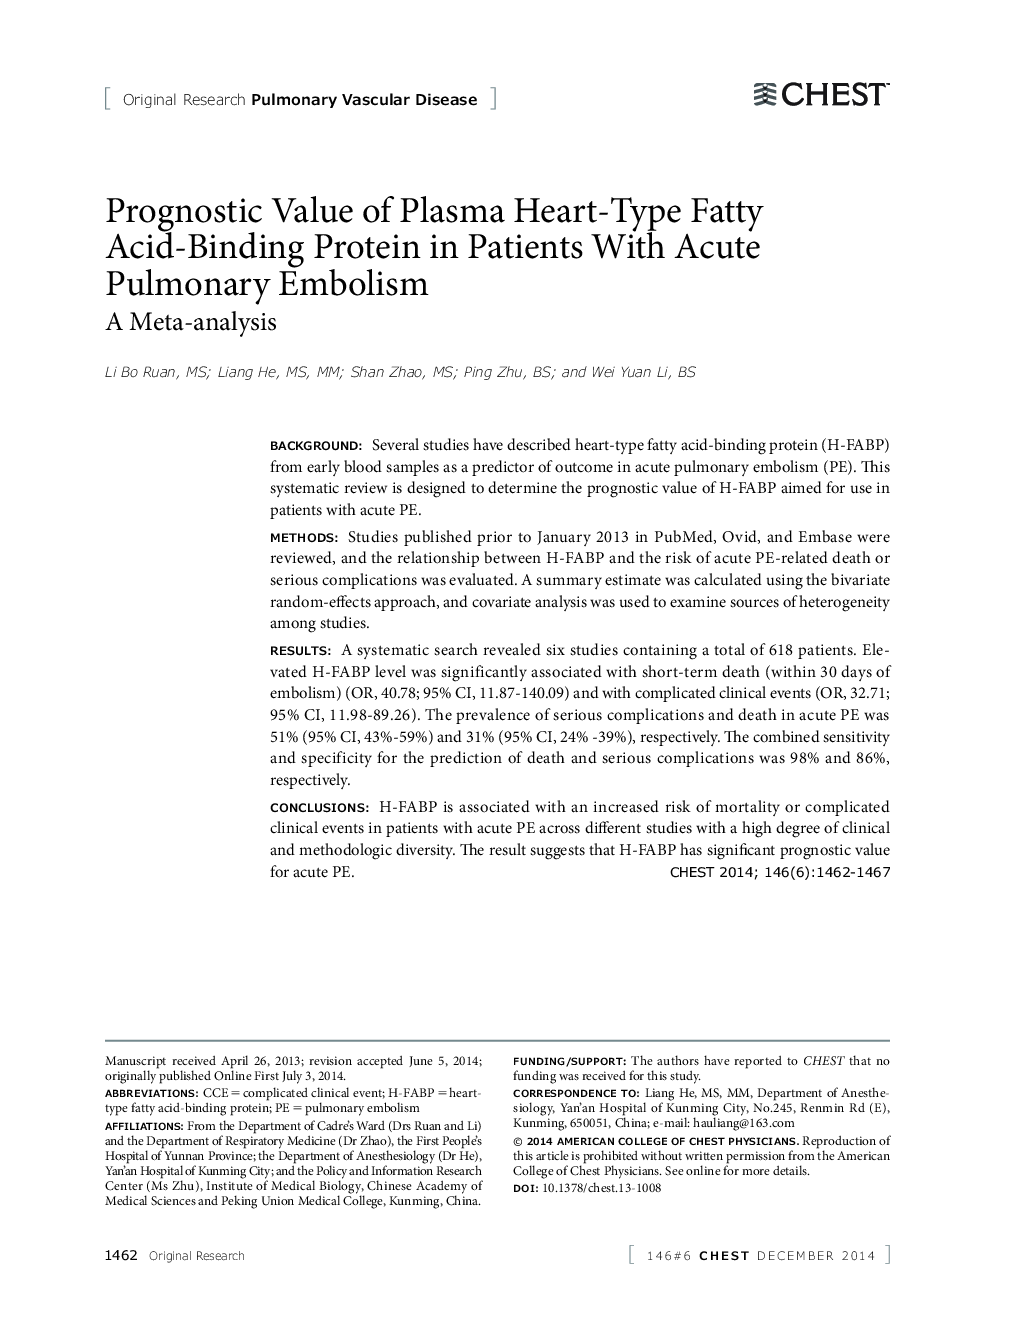 مقدار پروتئینی پروتئین اسید چرب قلب پلاسما در بیماران مبتلا به امبولیسم حاد ریوی 